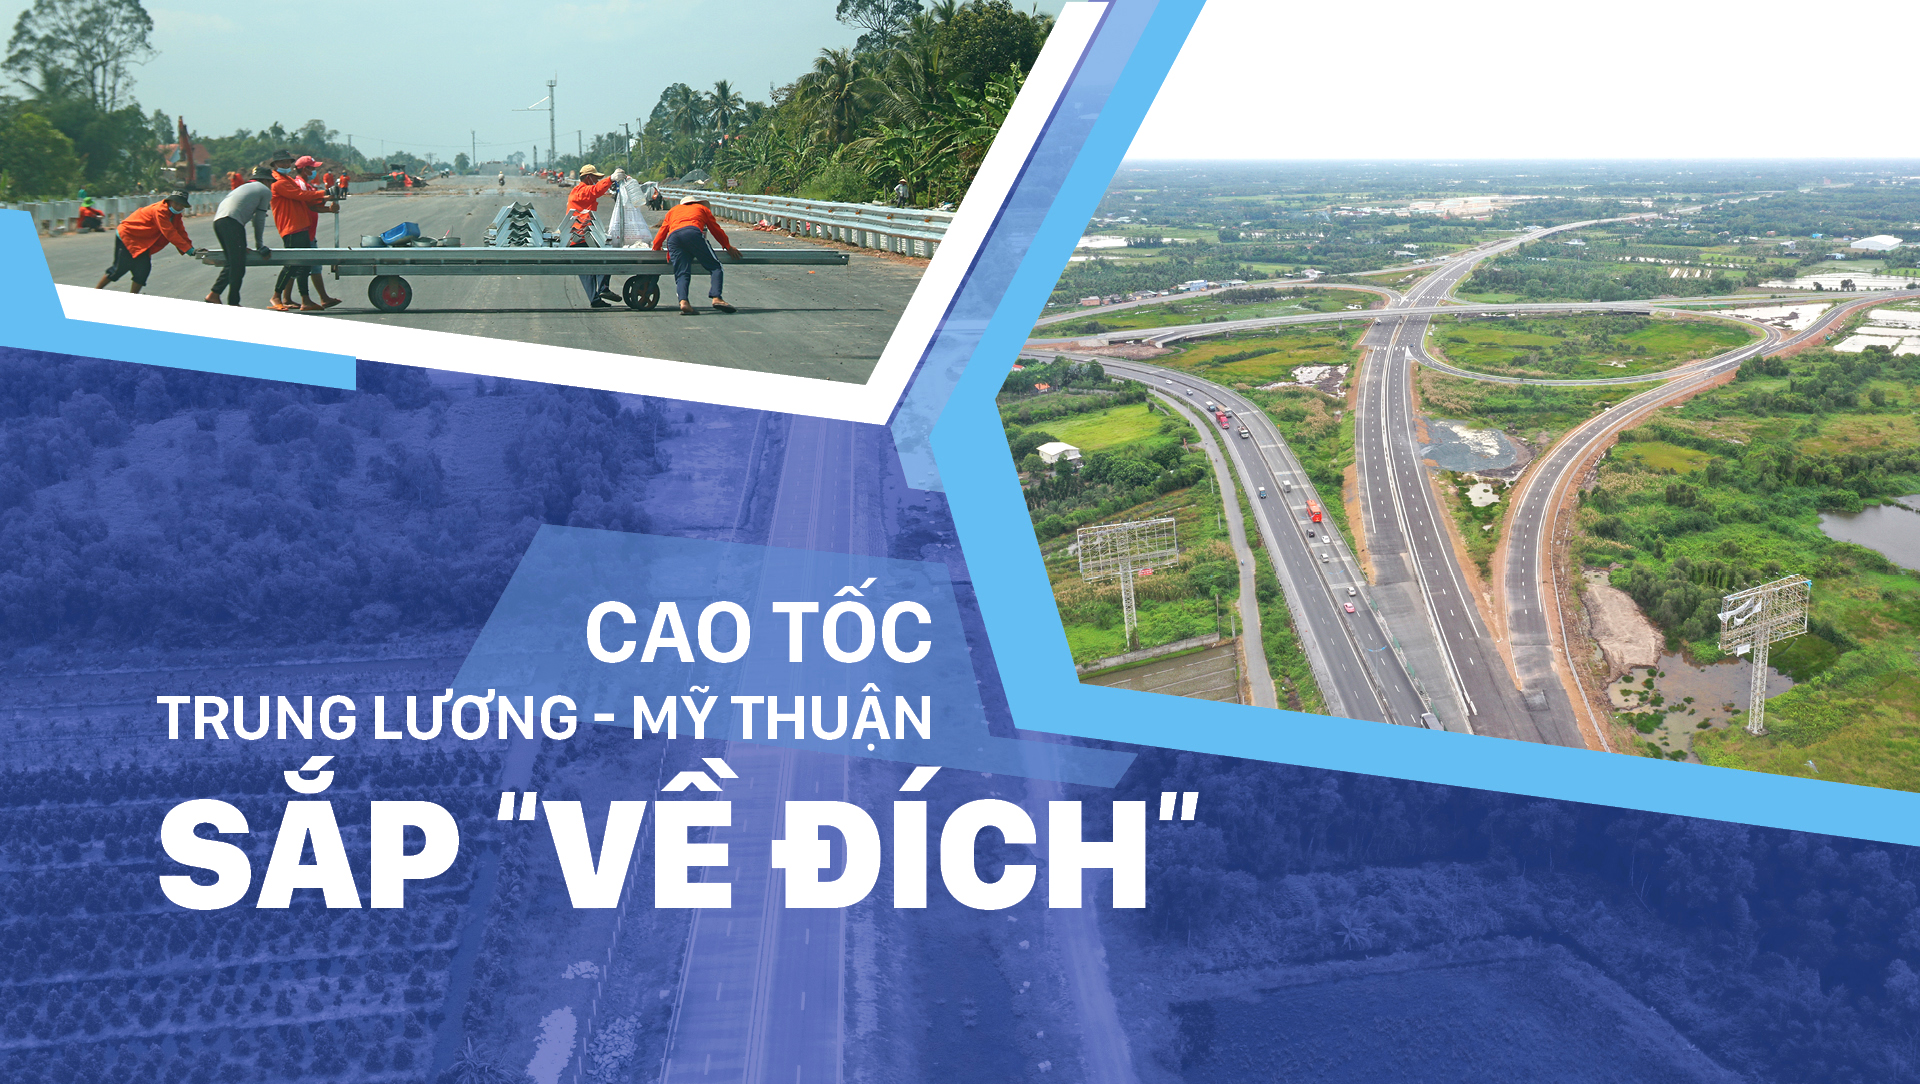 Cao tốc Trung Lương - Mỹ Thuận sắp “về đích”